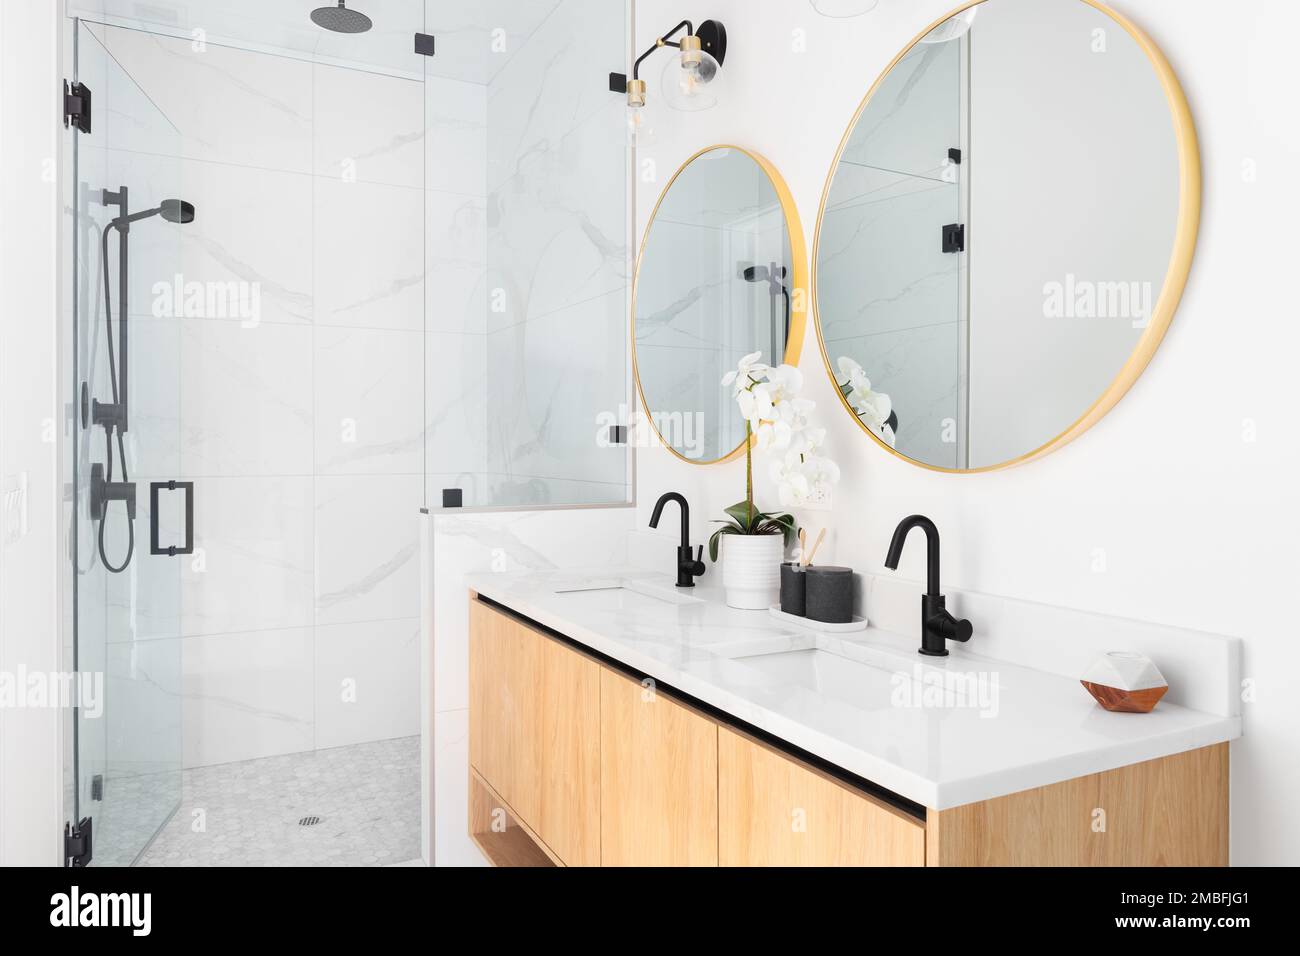 Una bella stanza da bagno con un mobile da toletta galleggiante in legno, specchi d'oro circolari, un ripiano in marmo e uno specchio rivestito in marmo con rubinetti neri. Foto Stock